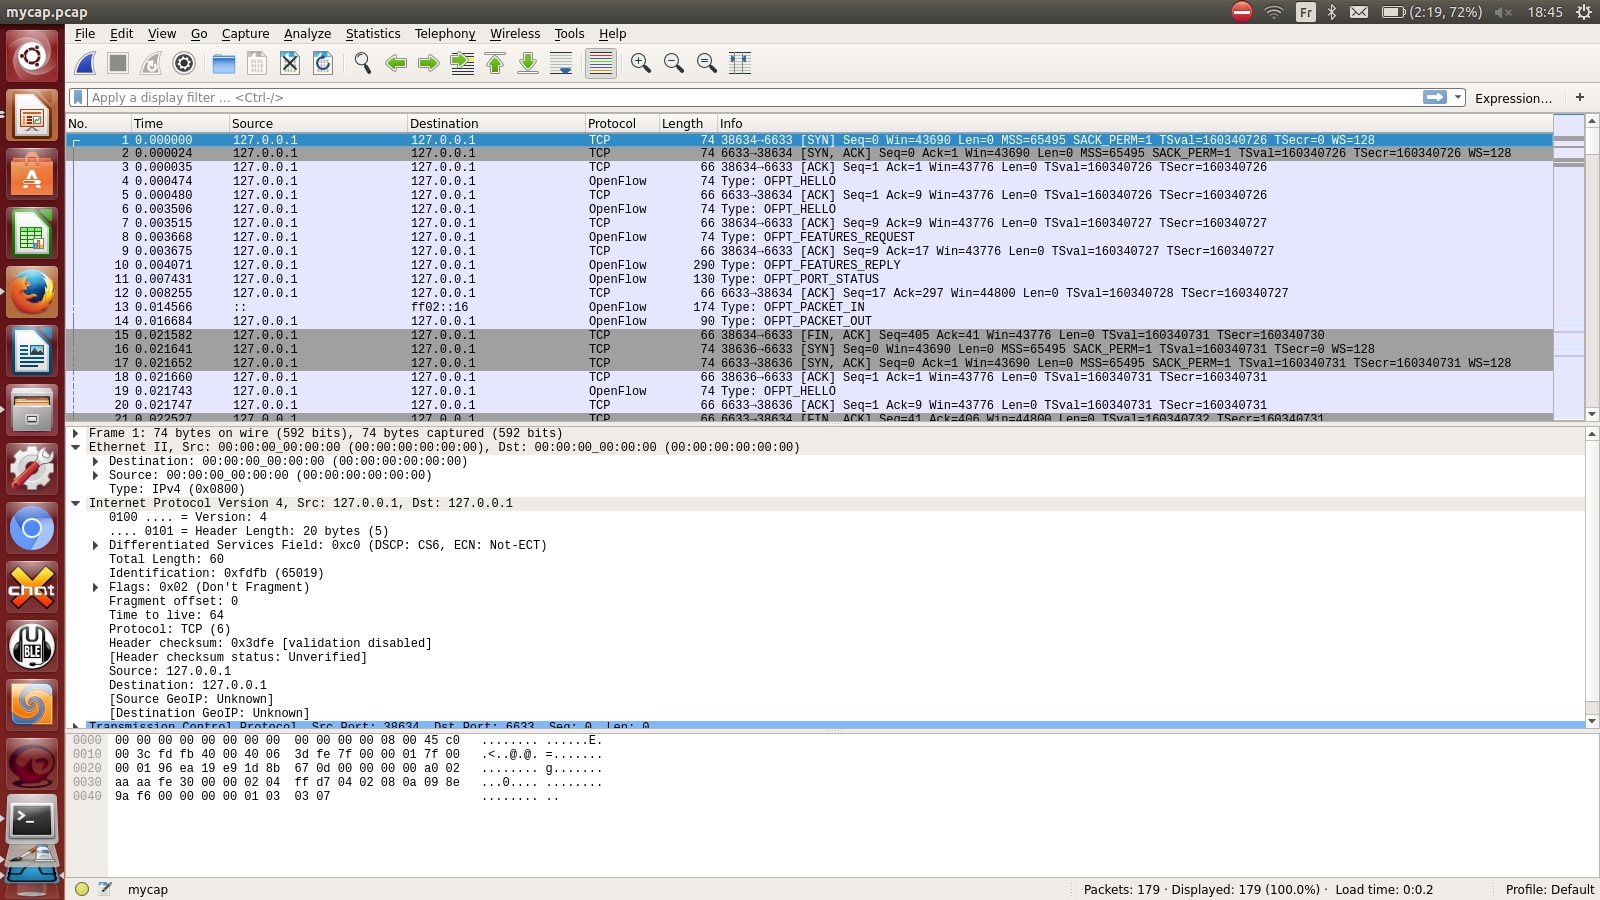 wireshark mac address capture file find ip